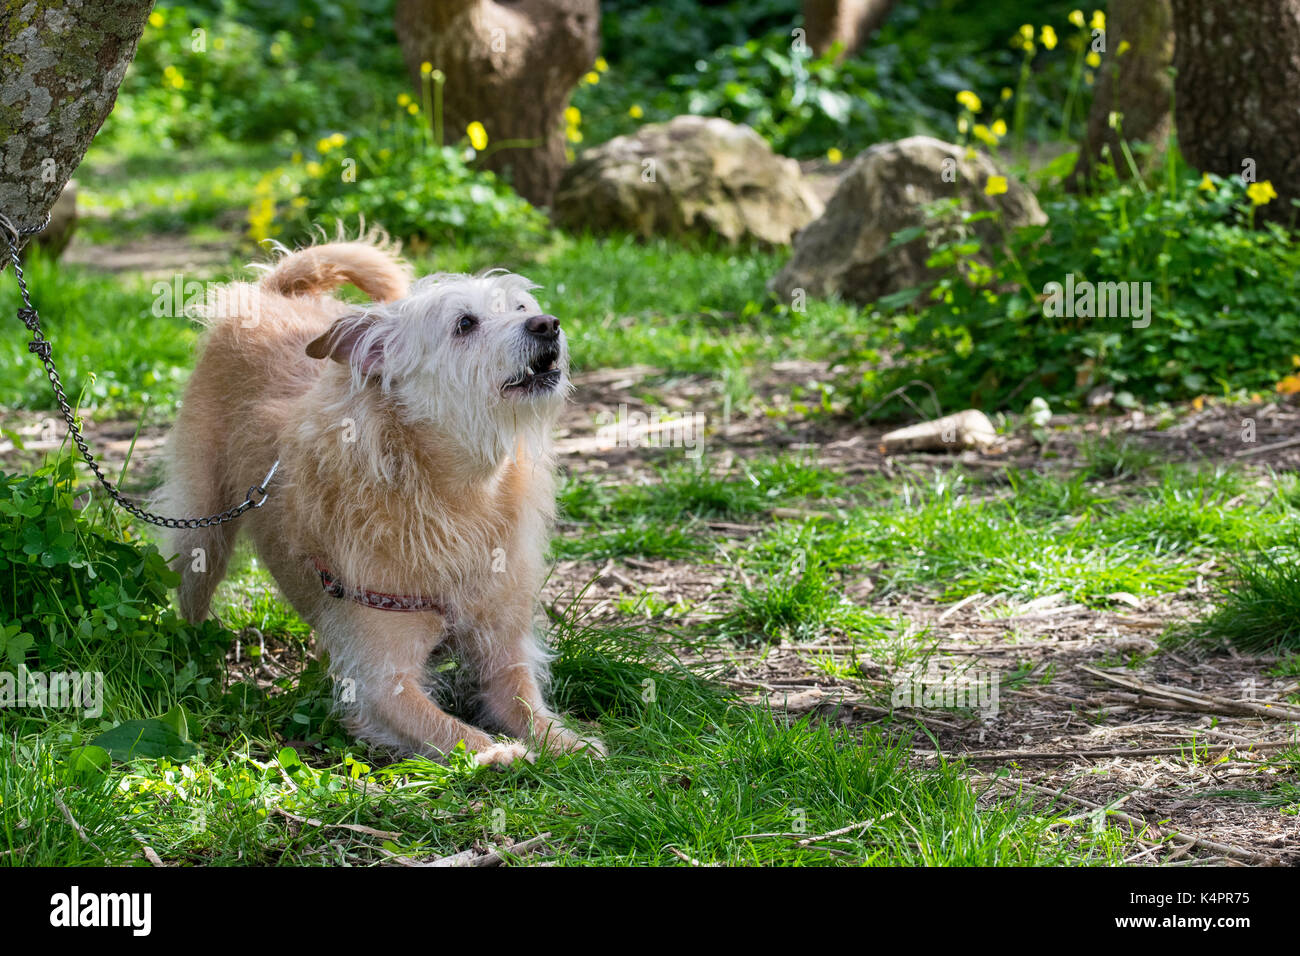 Un chien de couleur crème, enchaînés à un arbre, attend avec impatience son propriétaire de fonctionner librement et jouer dans la campagne. Fourrure hirsute, sympathique chien ludique Banque D'Images